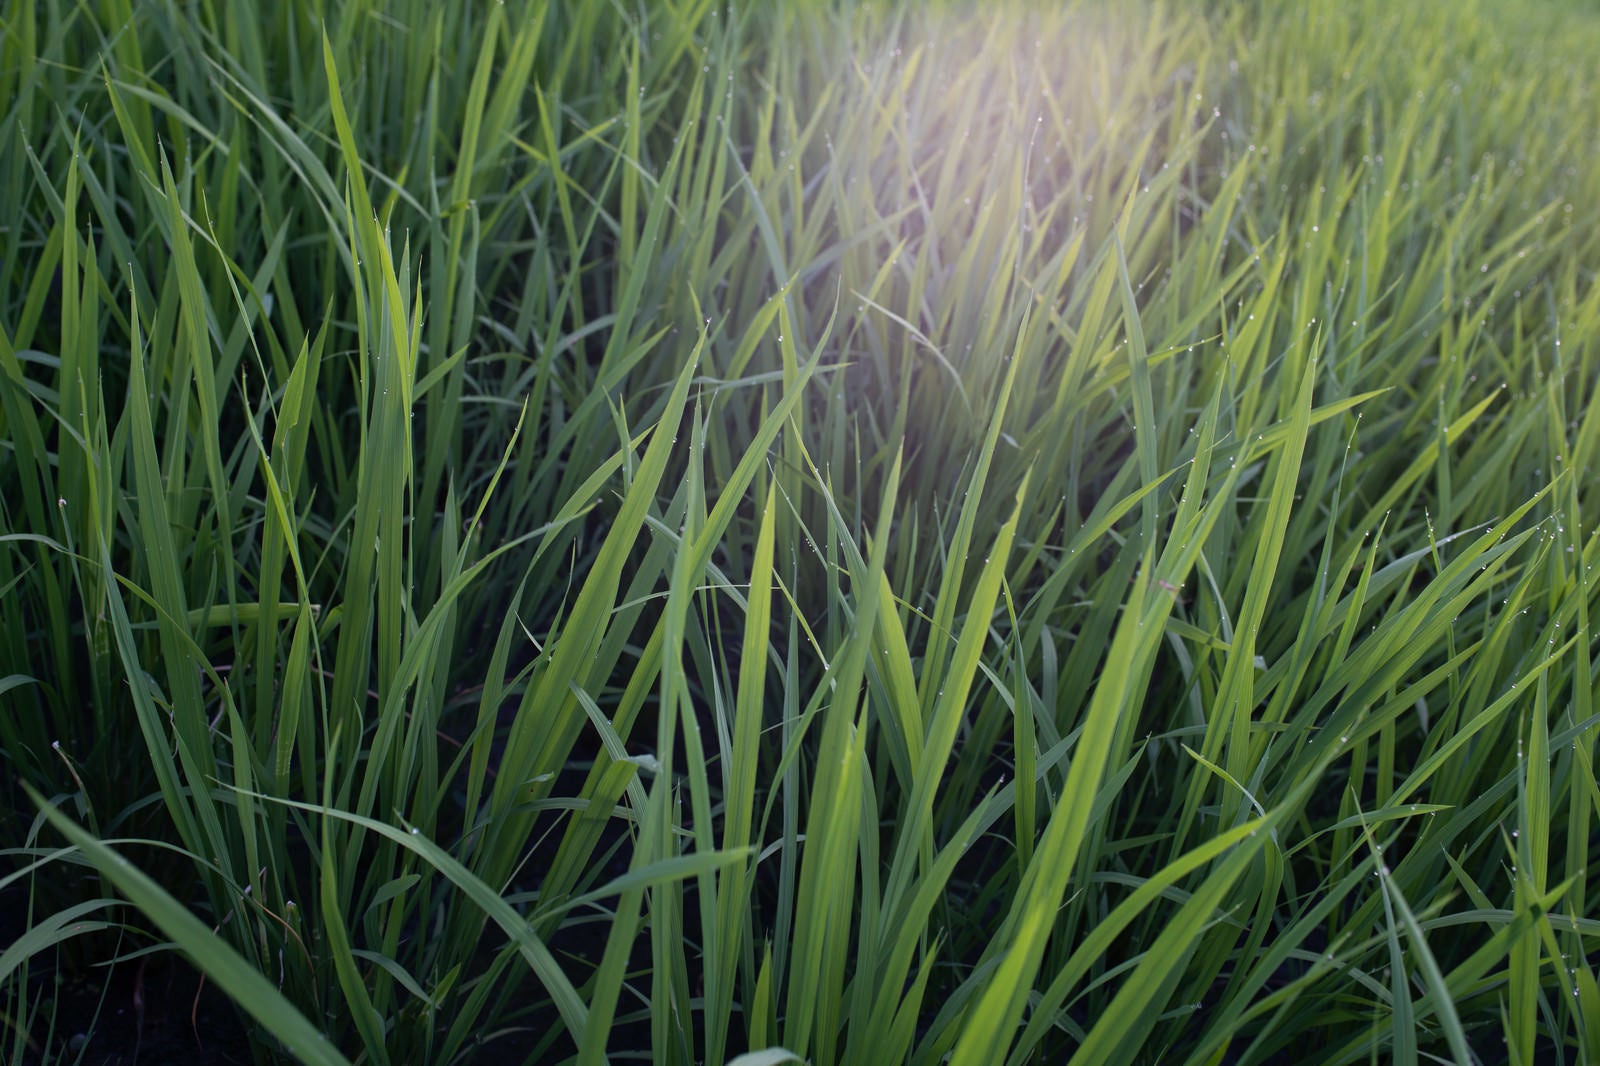 「雨粒が煌めく稲の葉先」の写真